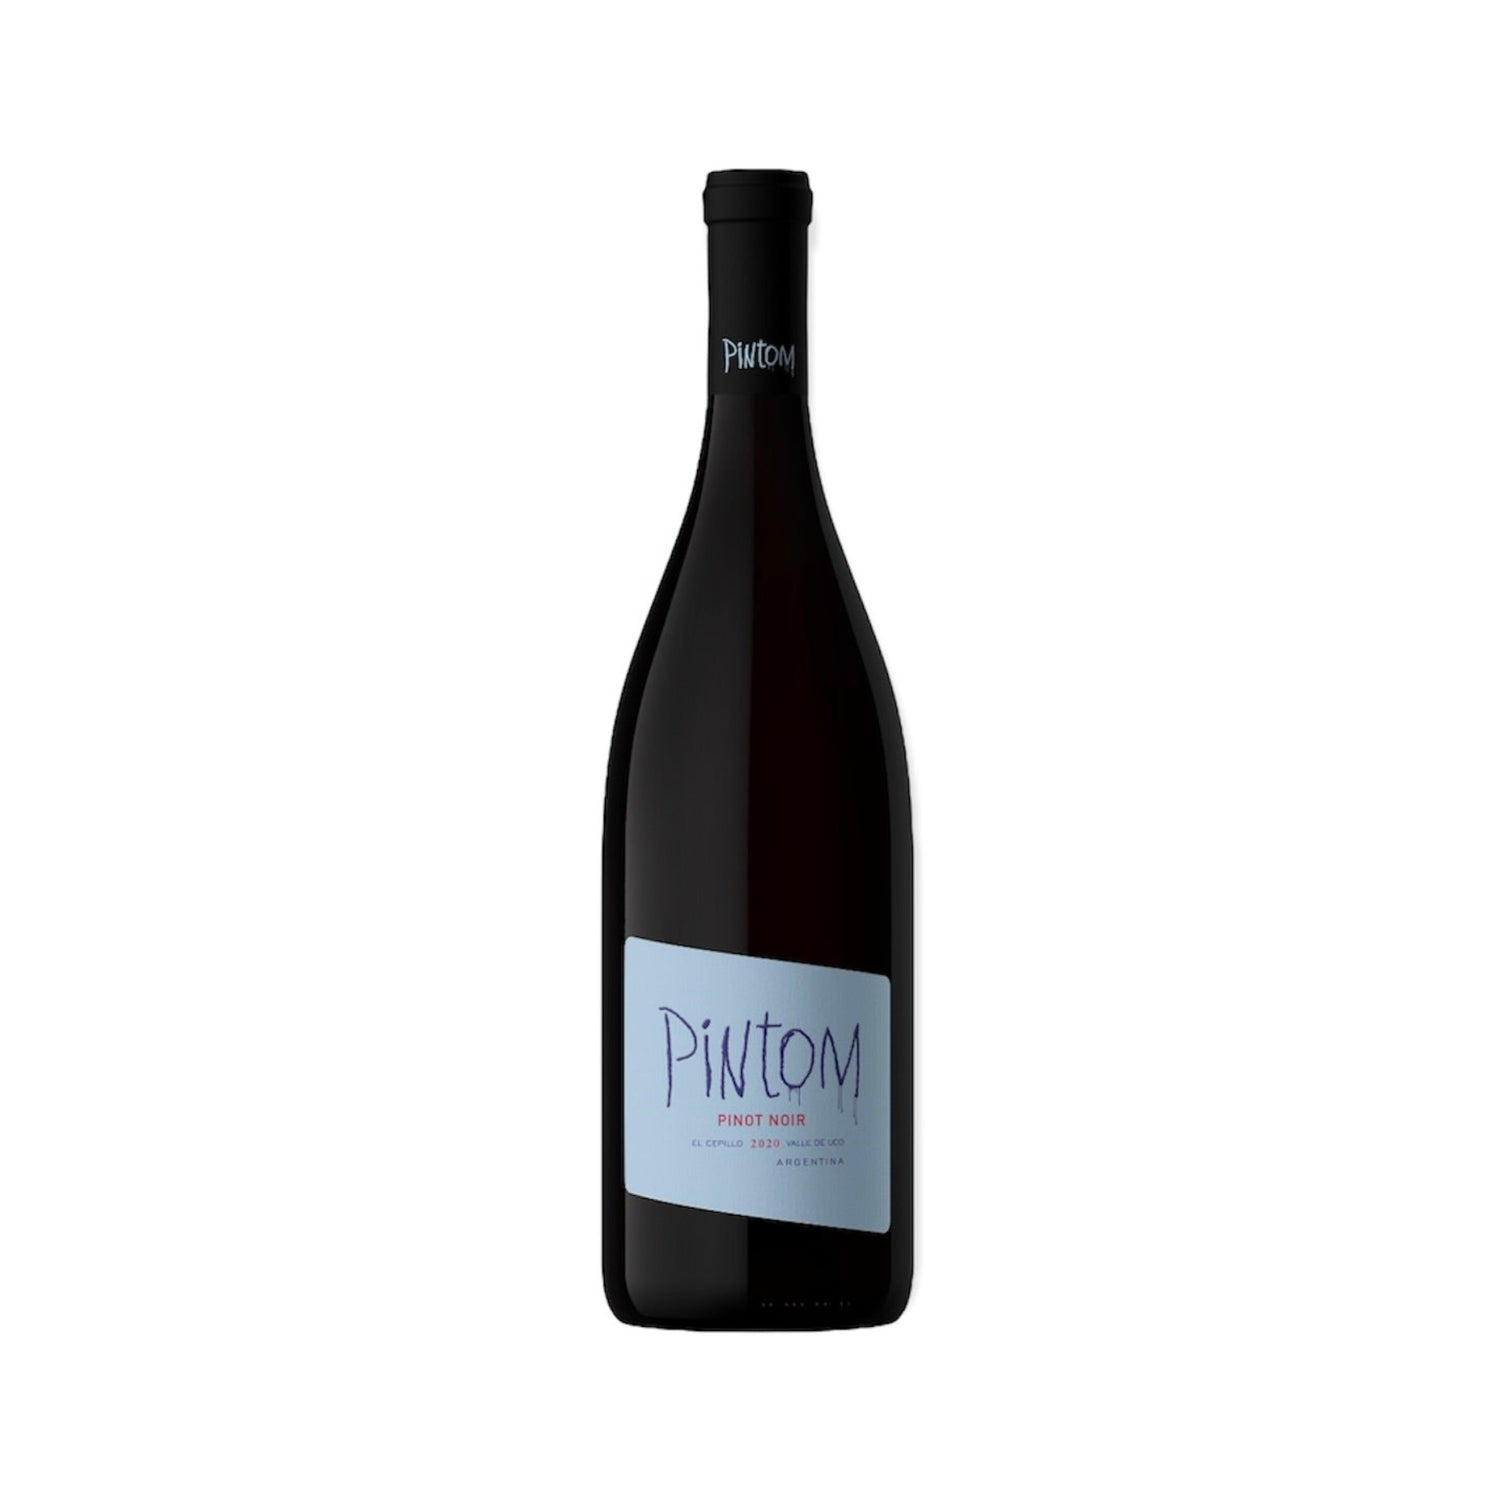 家飲みワインに最適なピノノワールから造られた赤のアルゼンチン産ナチュラルワイン